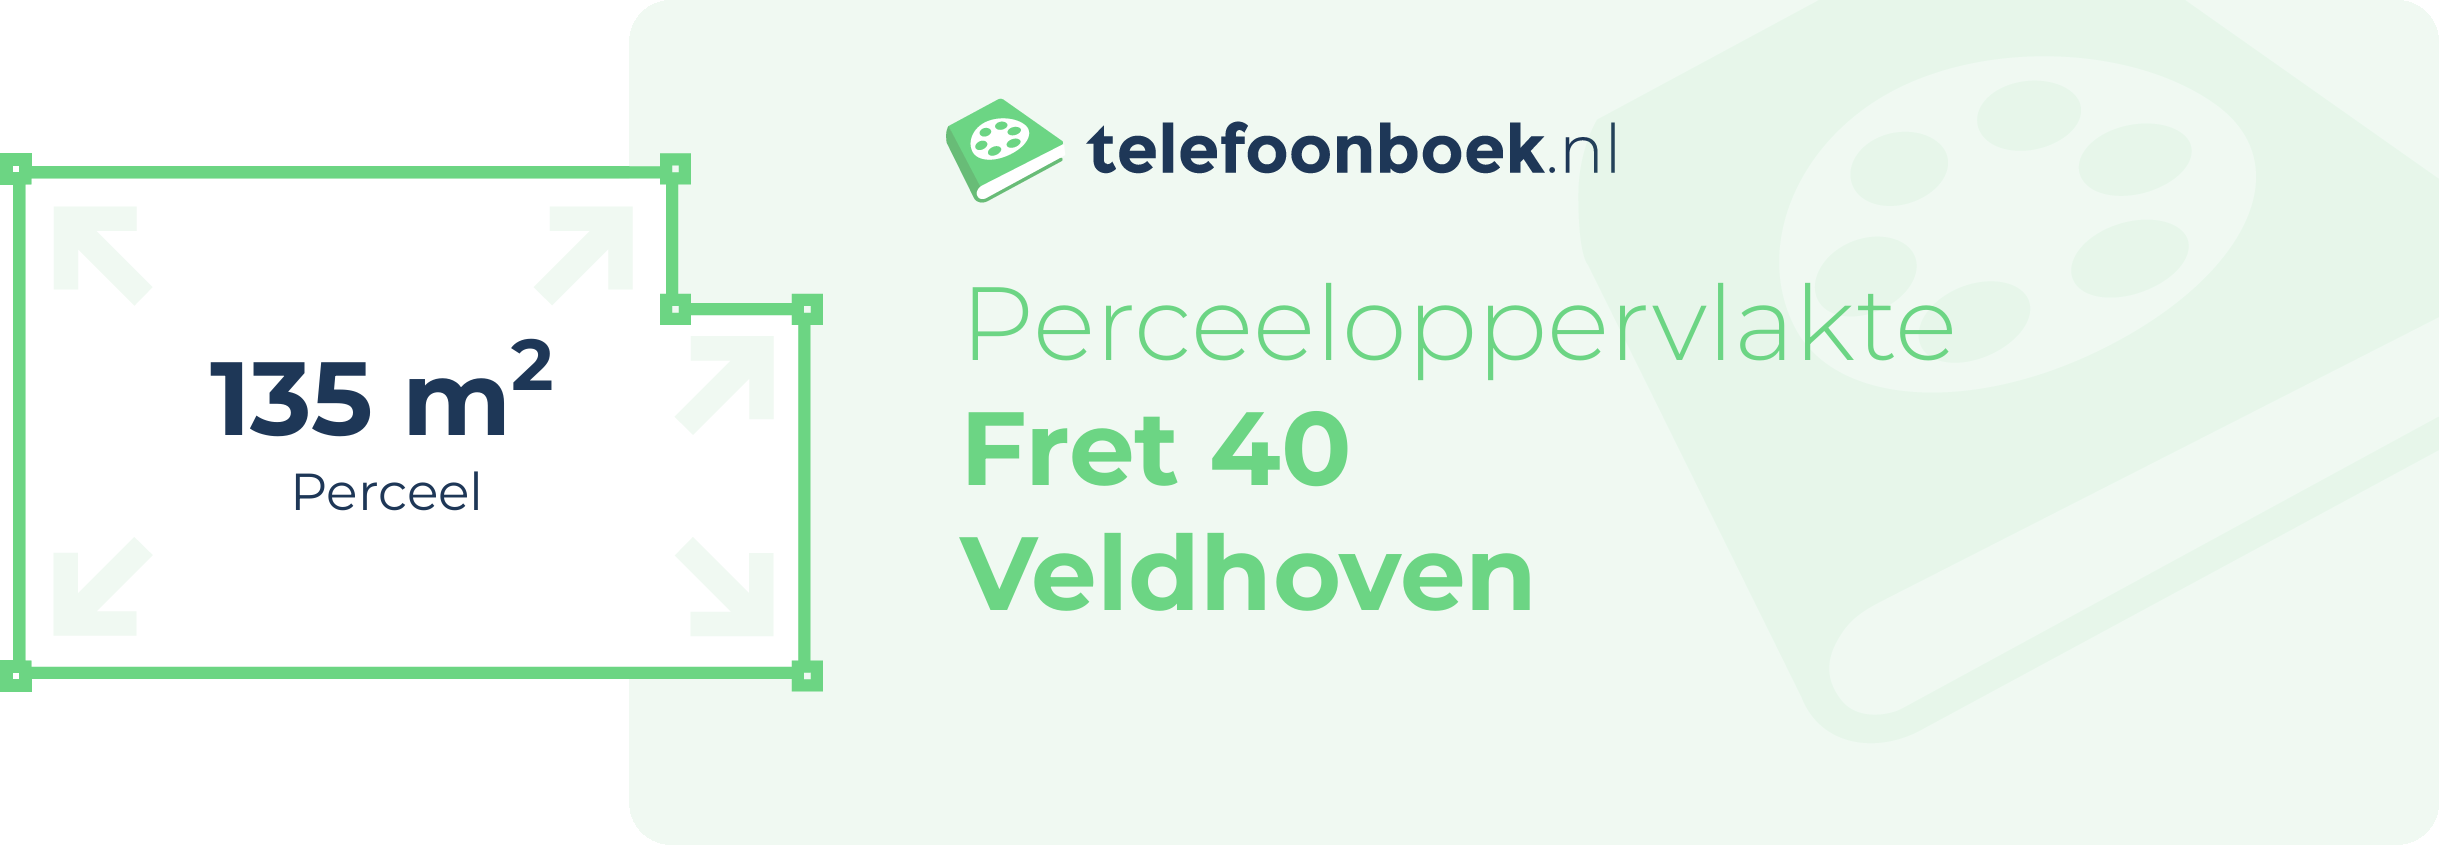 Perceeloppervlakte Fret 40 Veldhoven